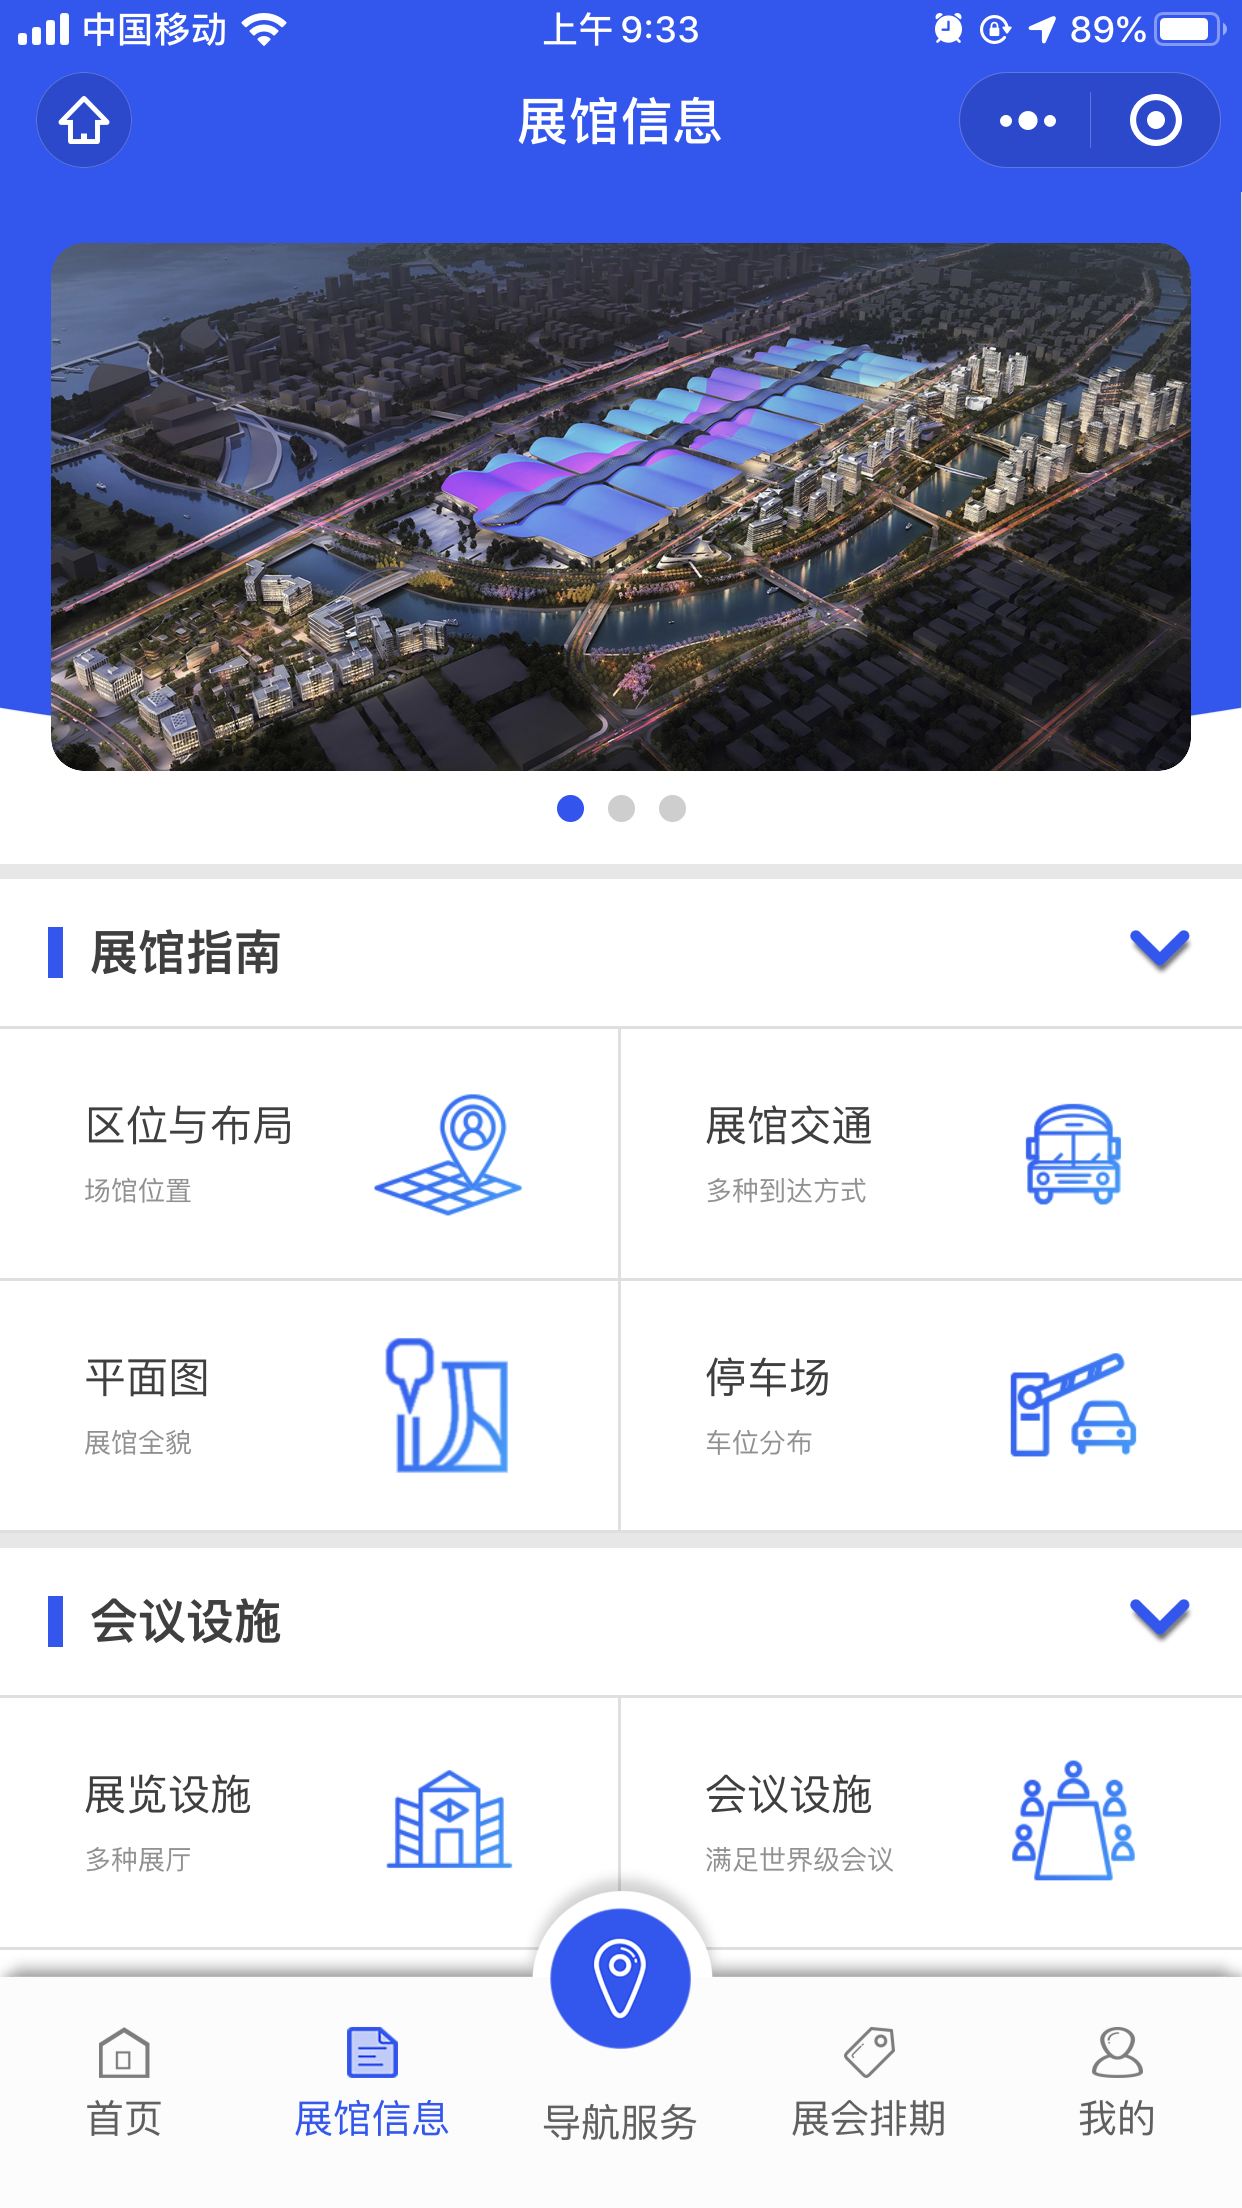 深圳国际会展中心ShenzhenWorld